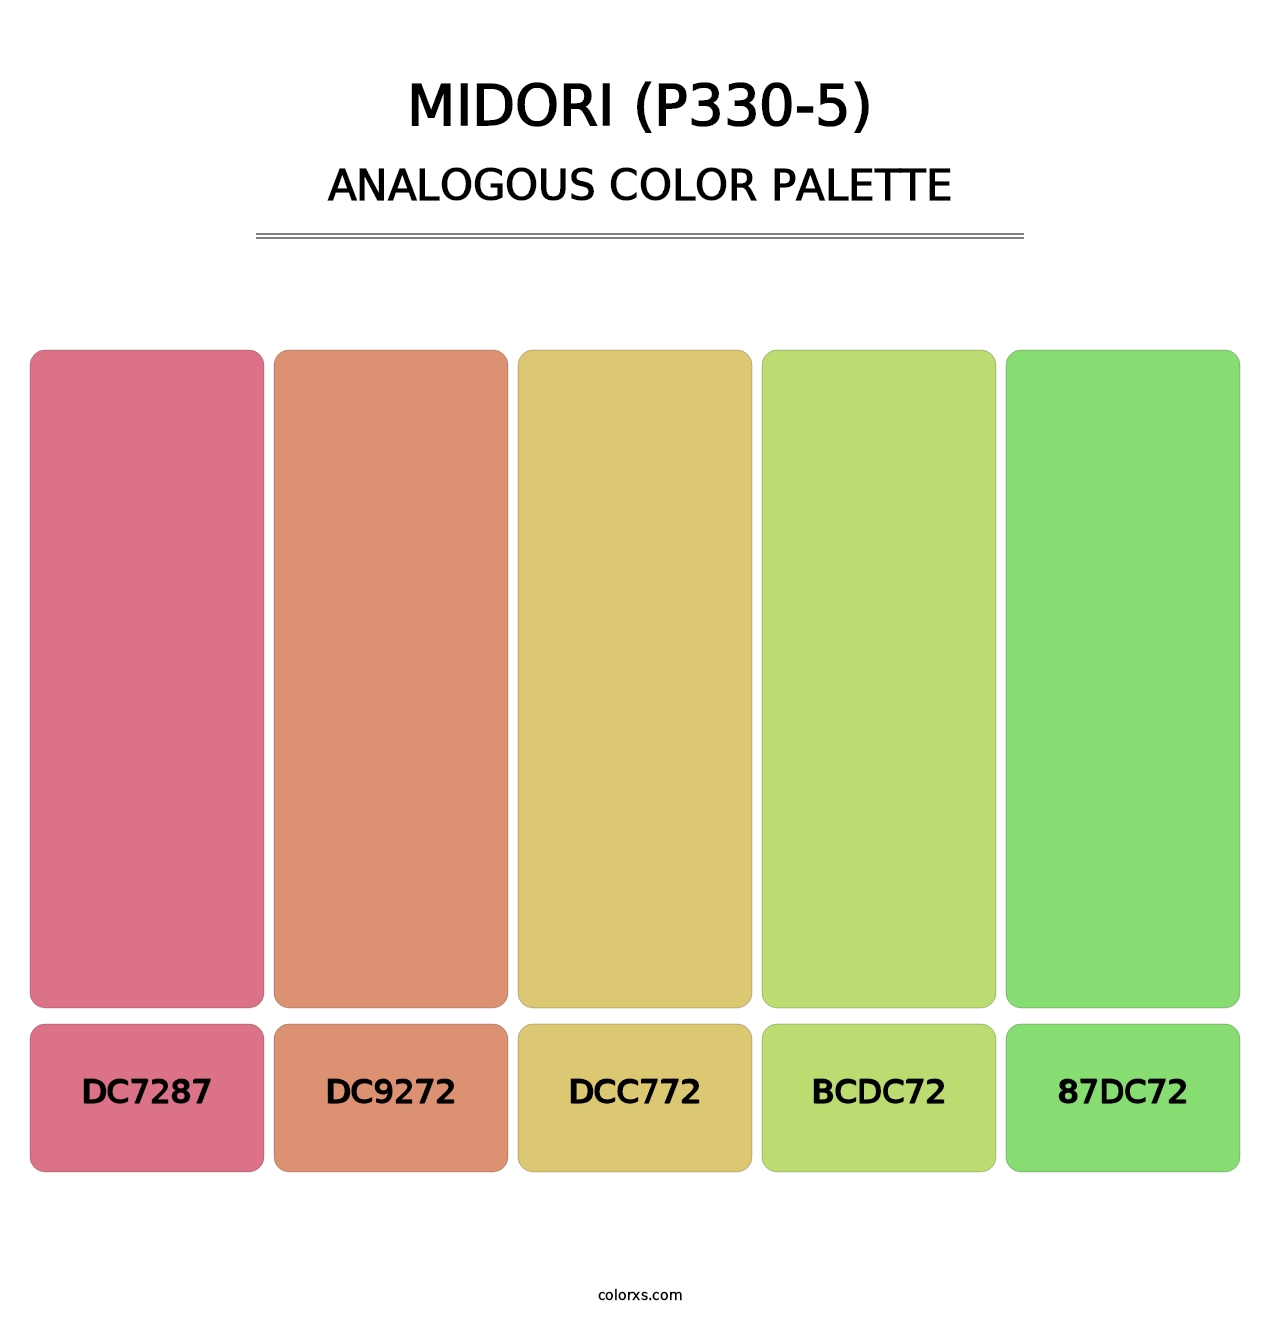 Midori (P330-5) - Analogous Color Palette